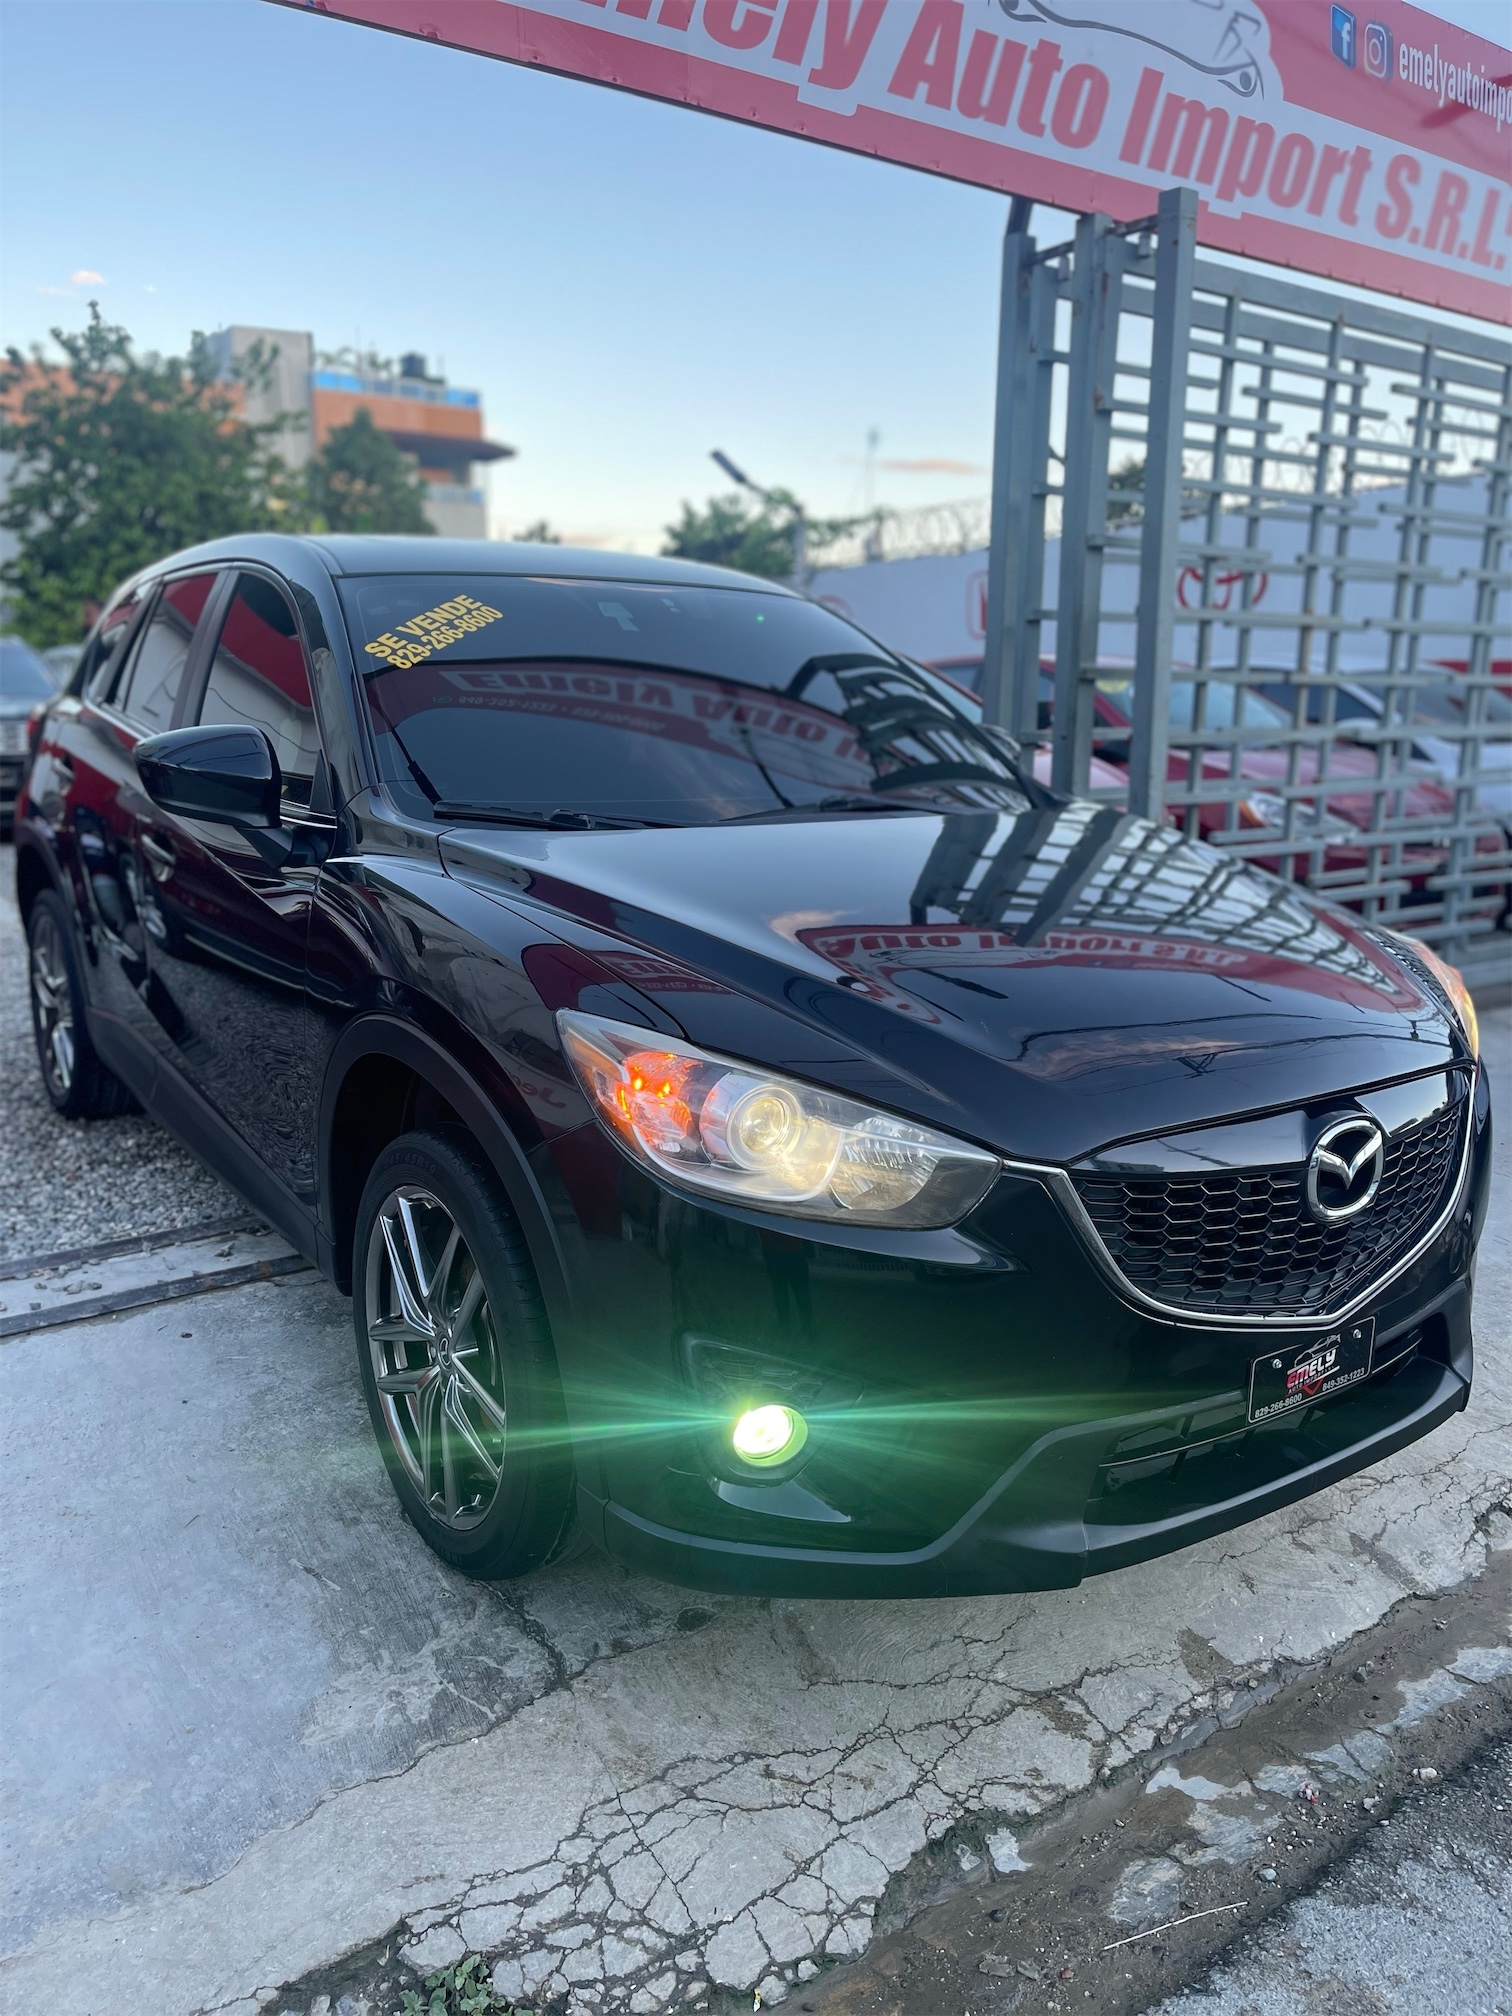 jeepetas y camionetas - Mazda CX-5 TOURING 2014🔥$330,000🚨Financiamiento Disp💸No Importa Crédito💳Rec